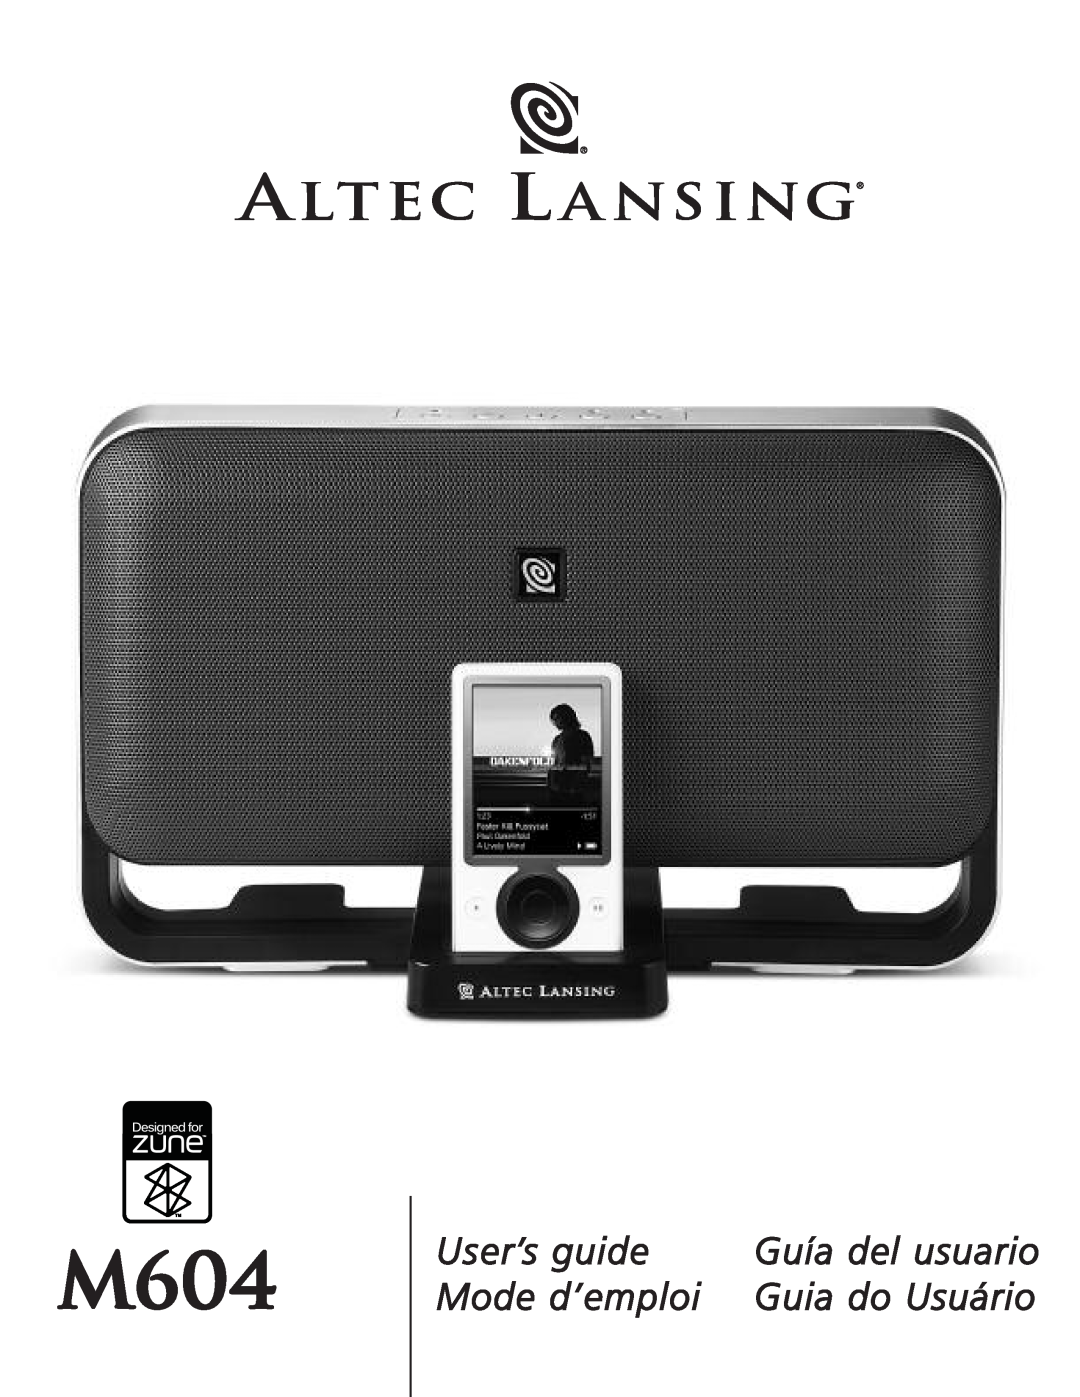 Altec Lansing M604 manual User’s guide, Mode d’emploi, Guía del usuario, Guia do Usuário 